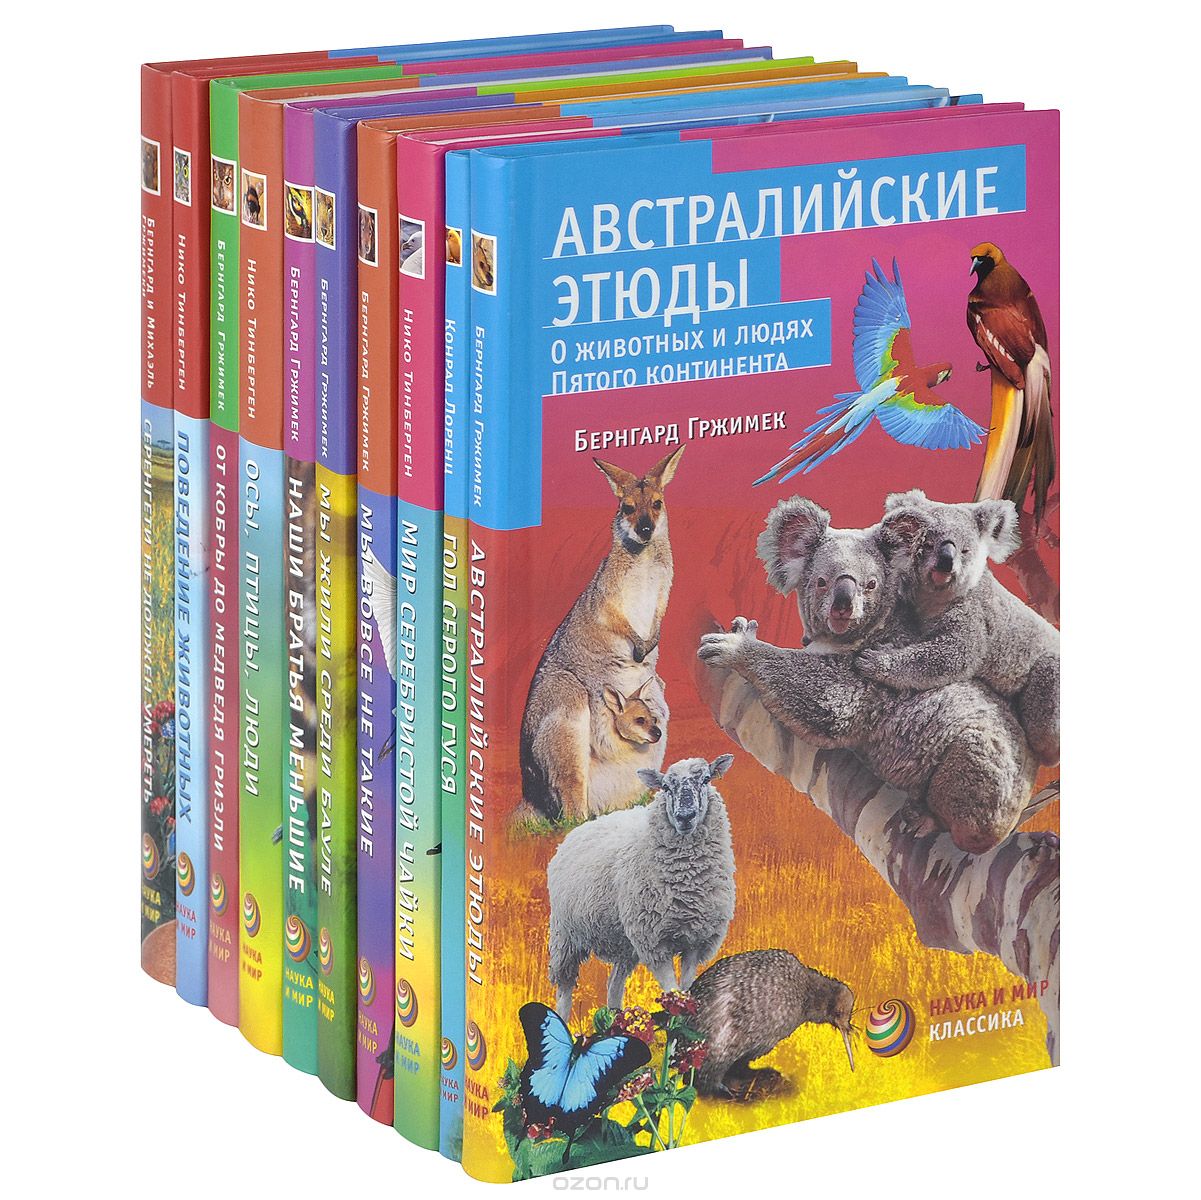 Скачать книгу "Этюды о животных (комплект из 10 книг)"